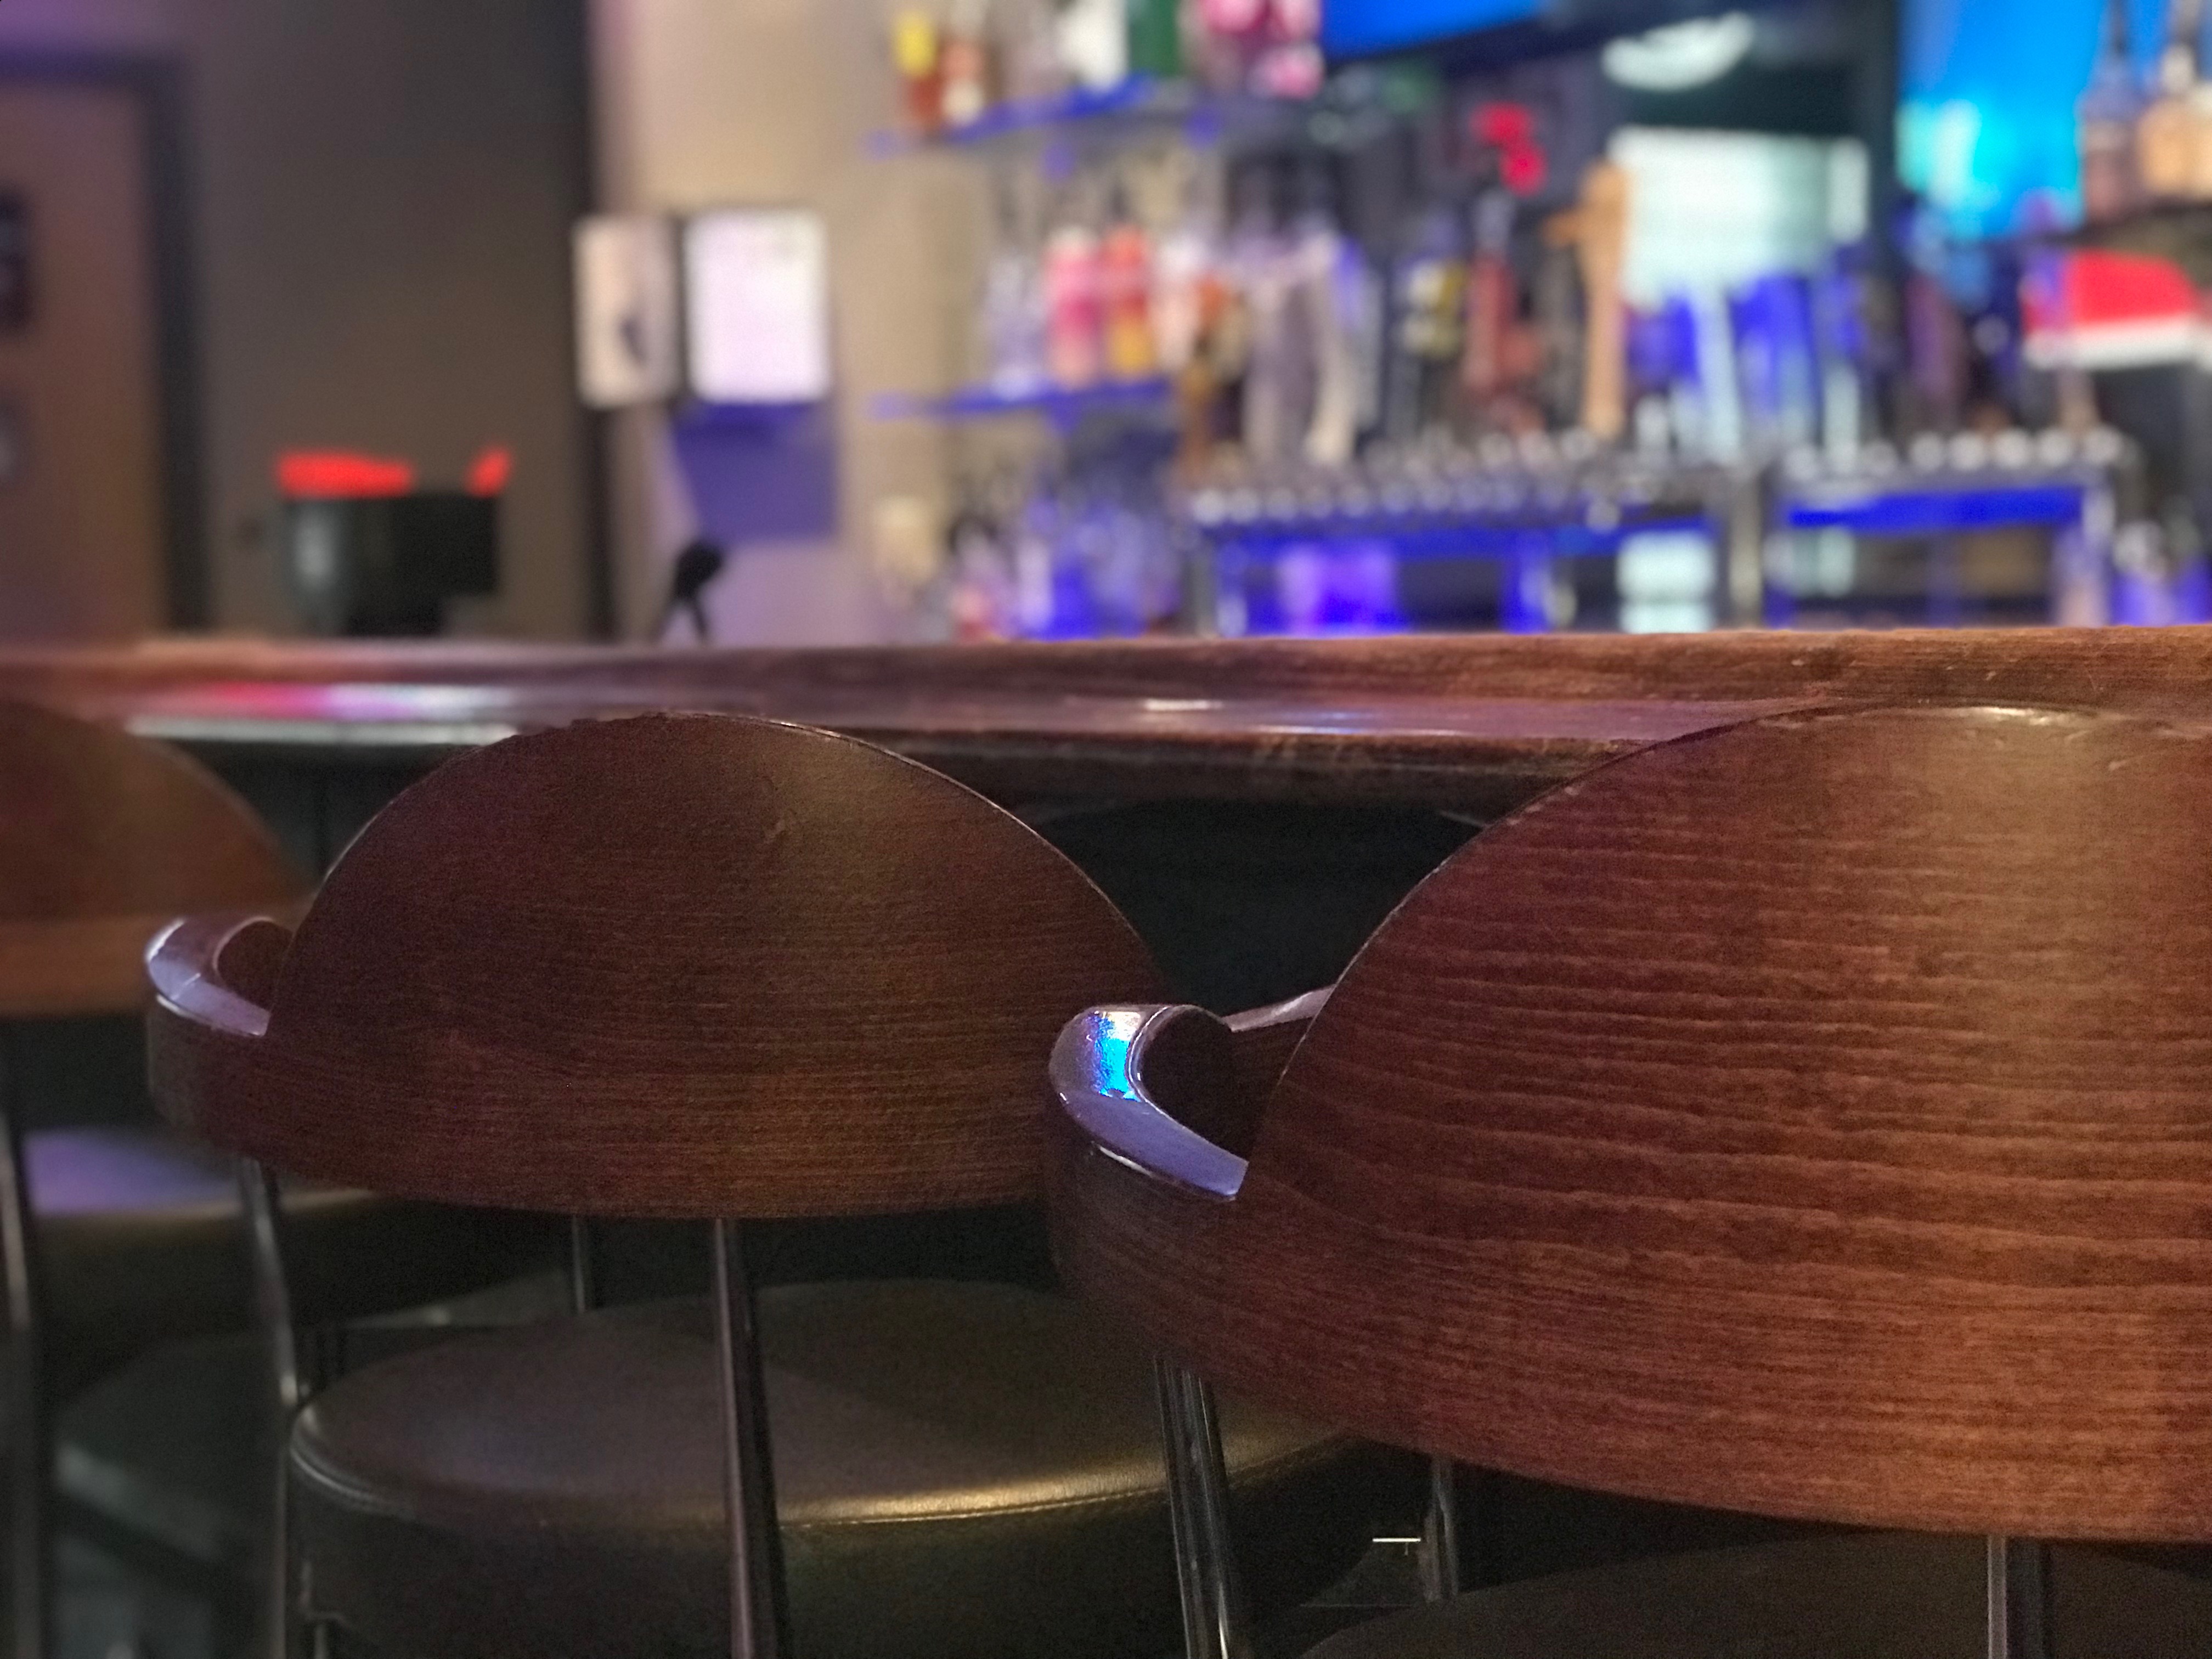 Three stools at a bar